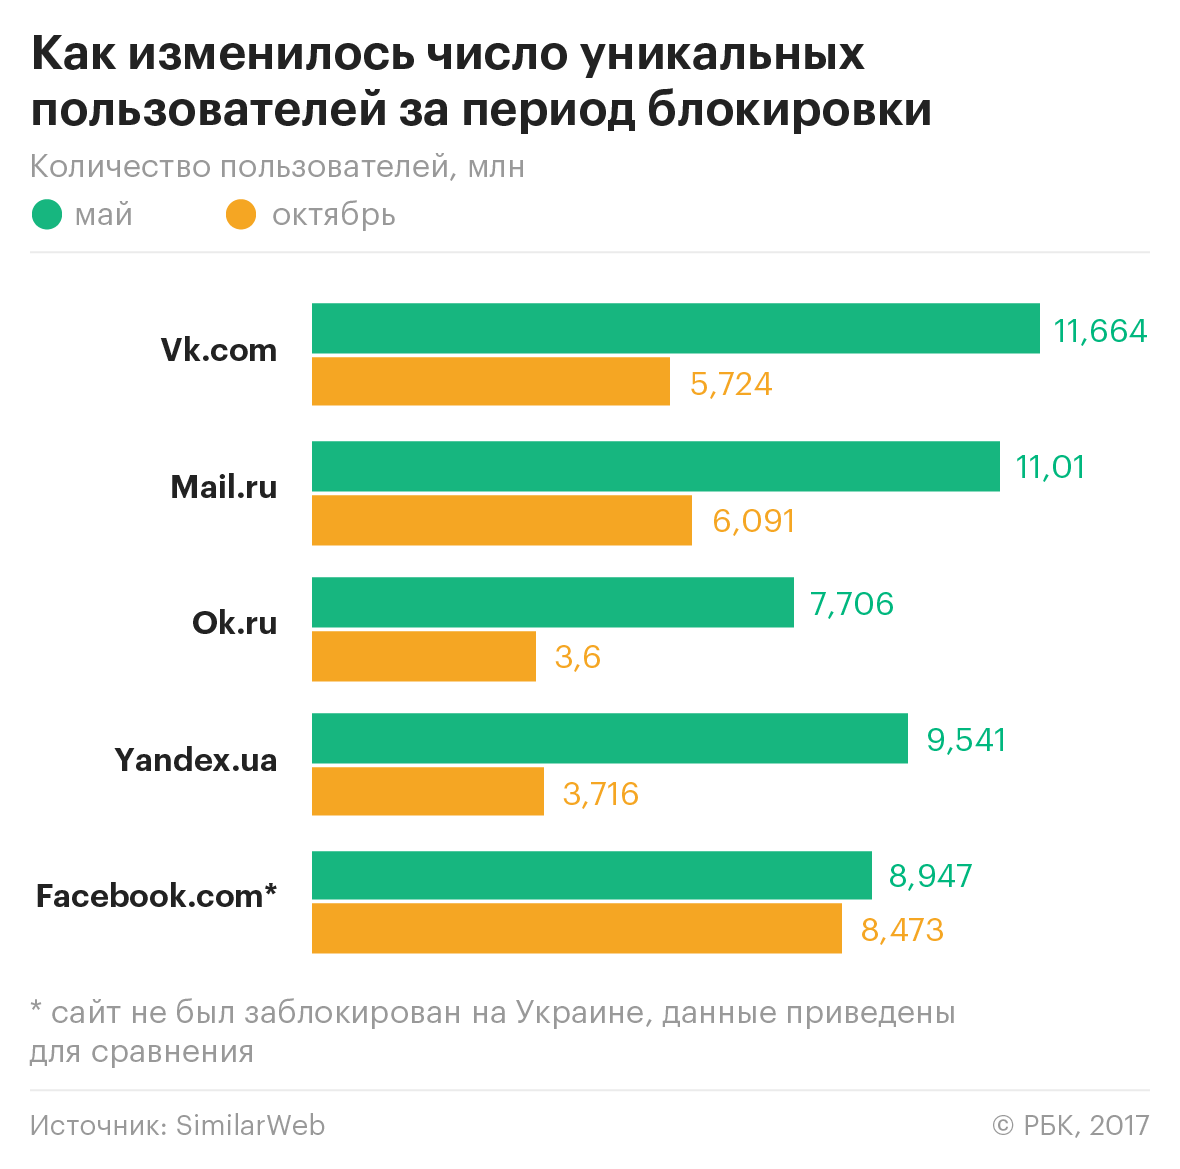 «ВКонтакте» остался в числе популярных ресурсов Украины после блокировки